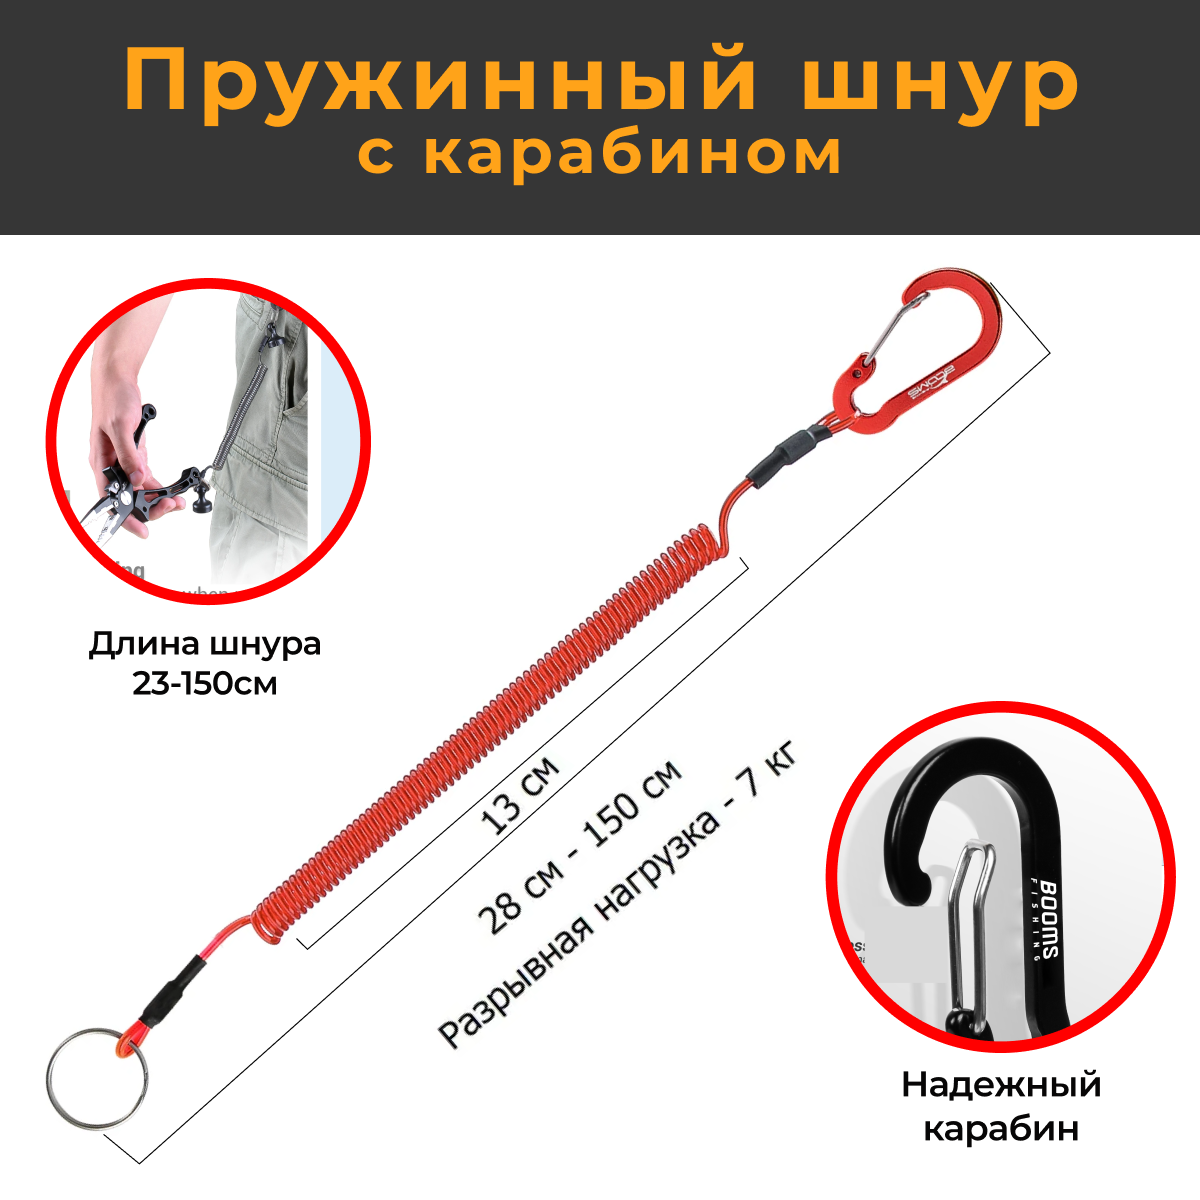 Профессиональный Пружинный шнур с карабином 150 см, красный страховочный тросик для инструментов и ножниц